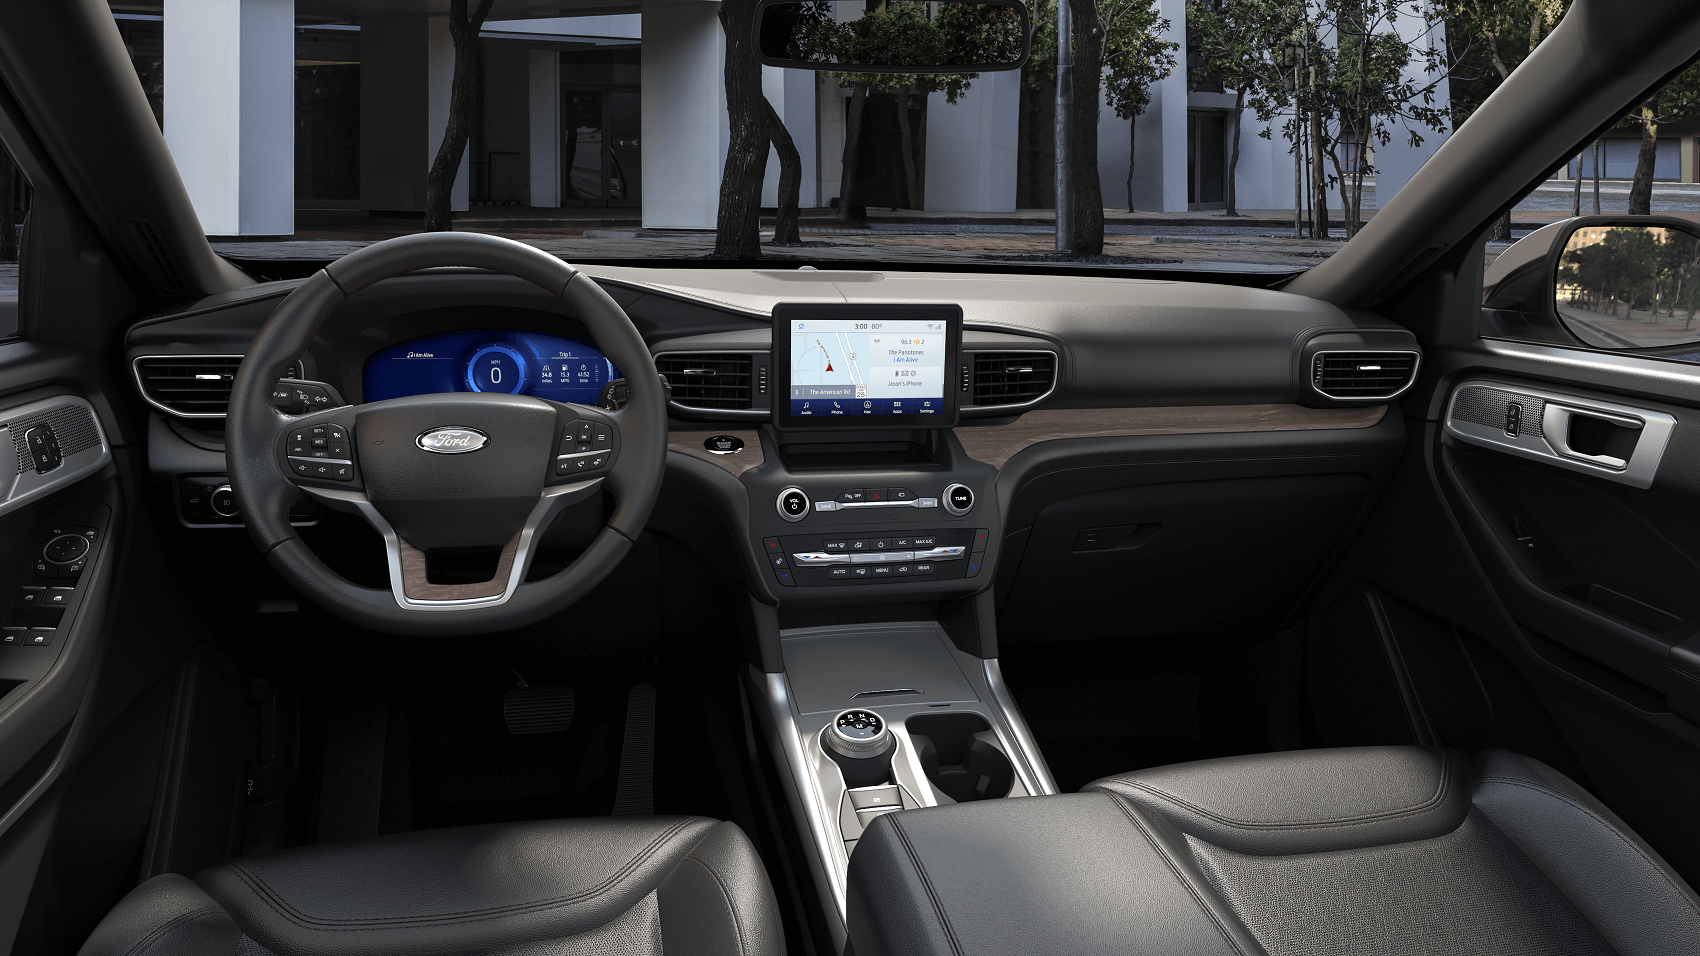 2021 Ford Explorer Interior Review
